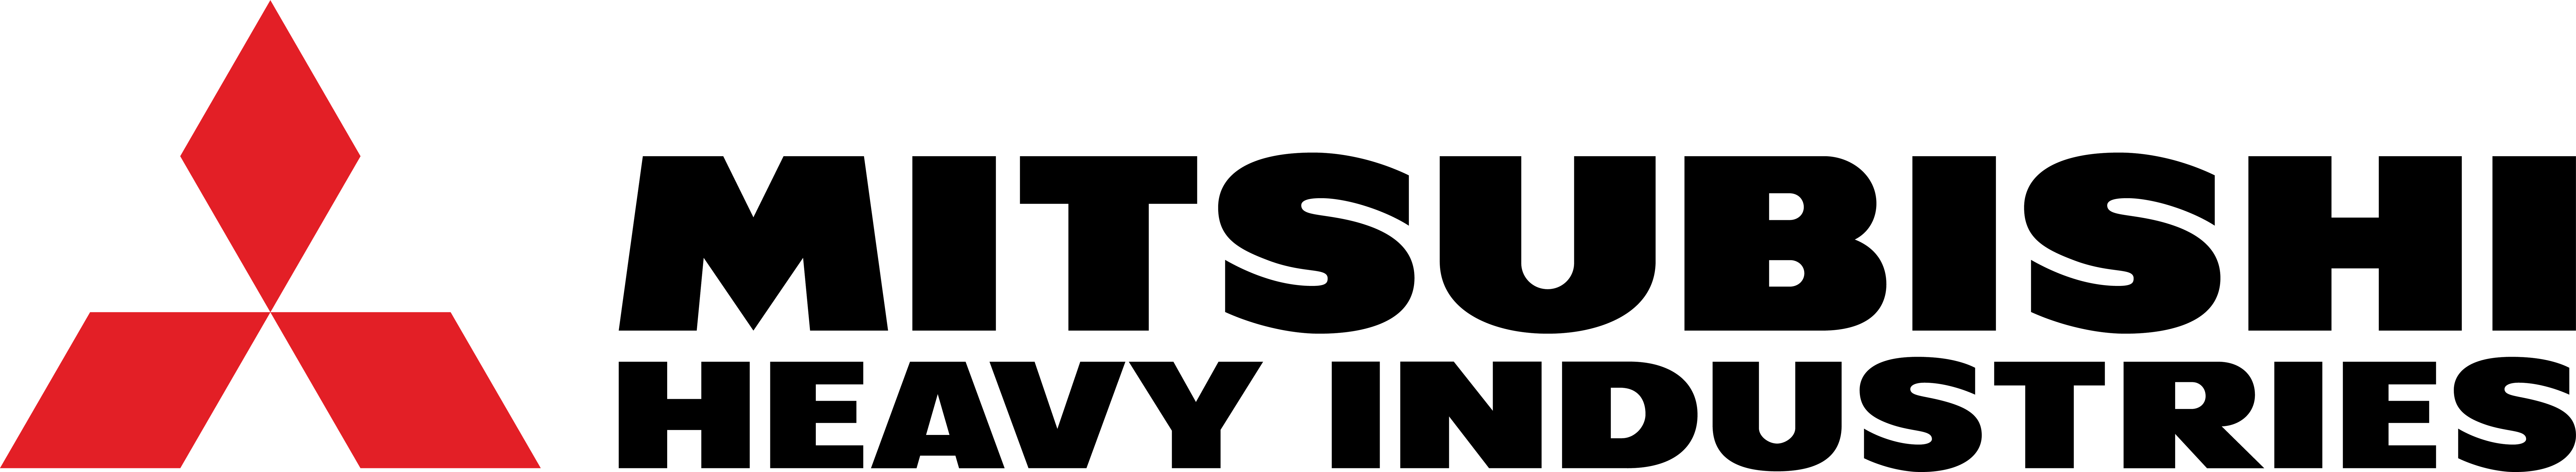 mitsubishi-heavy-industries-logo